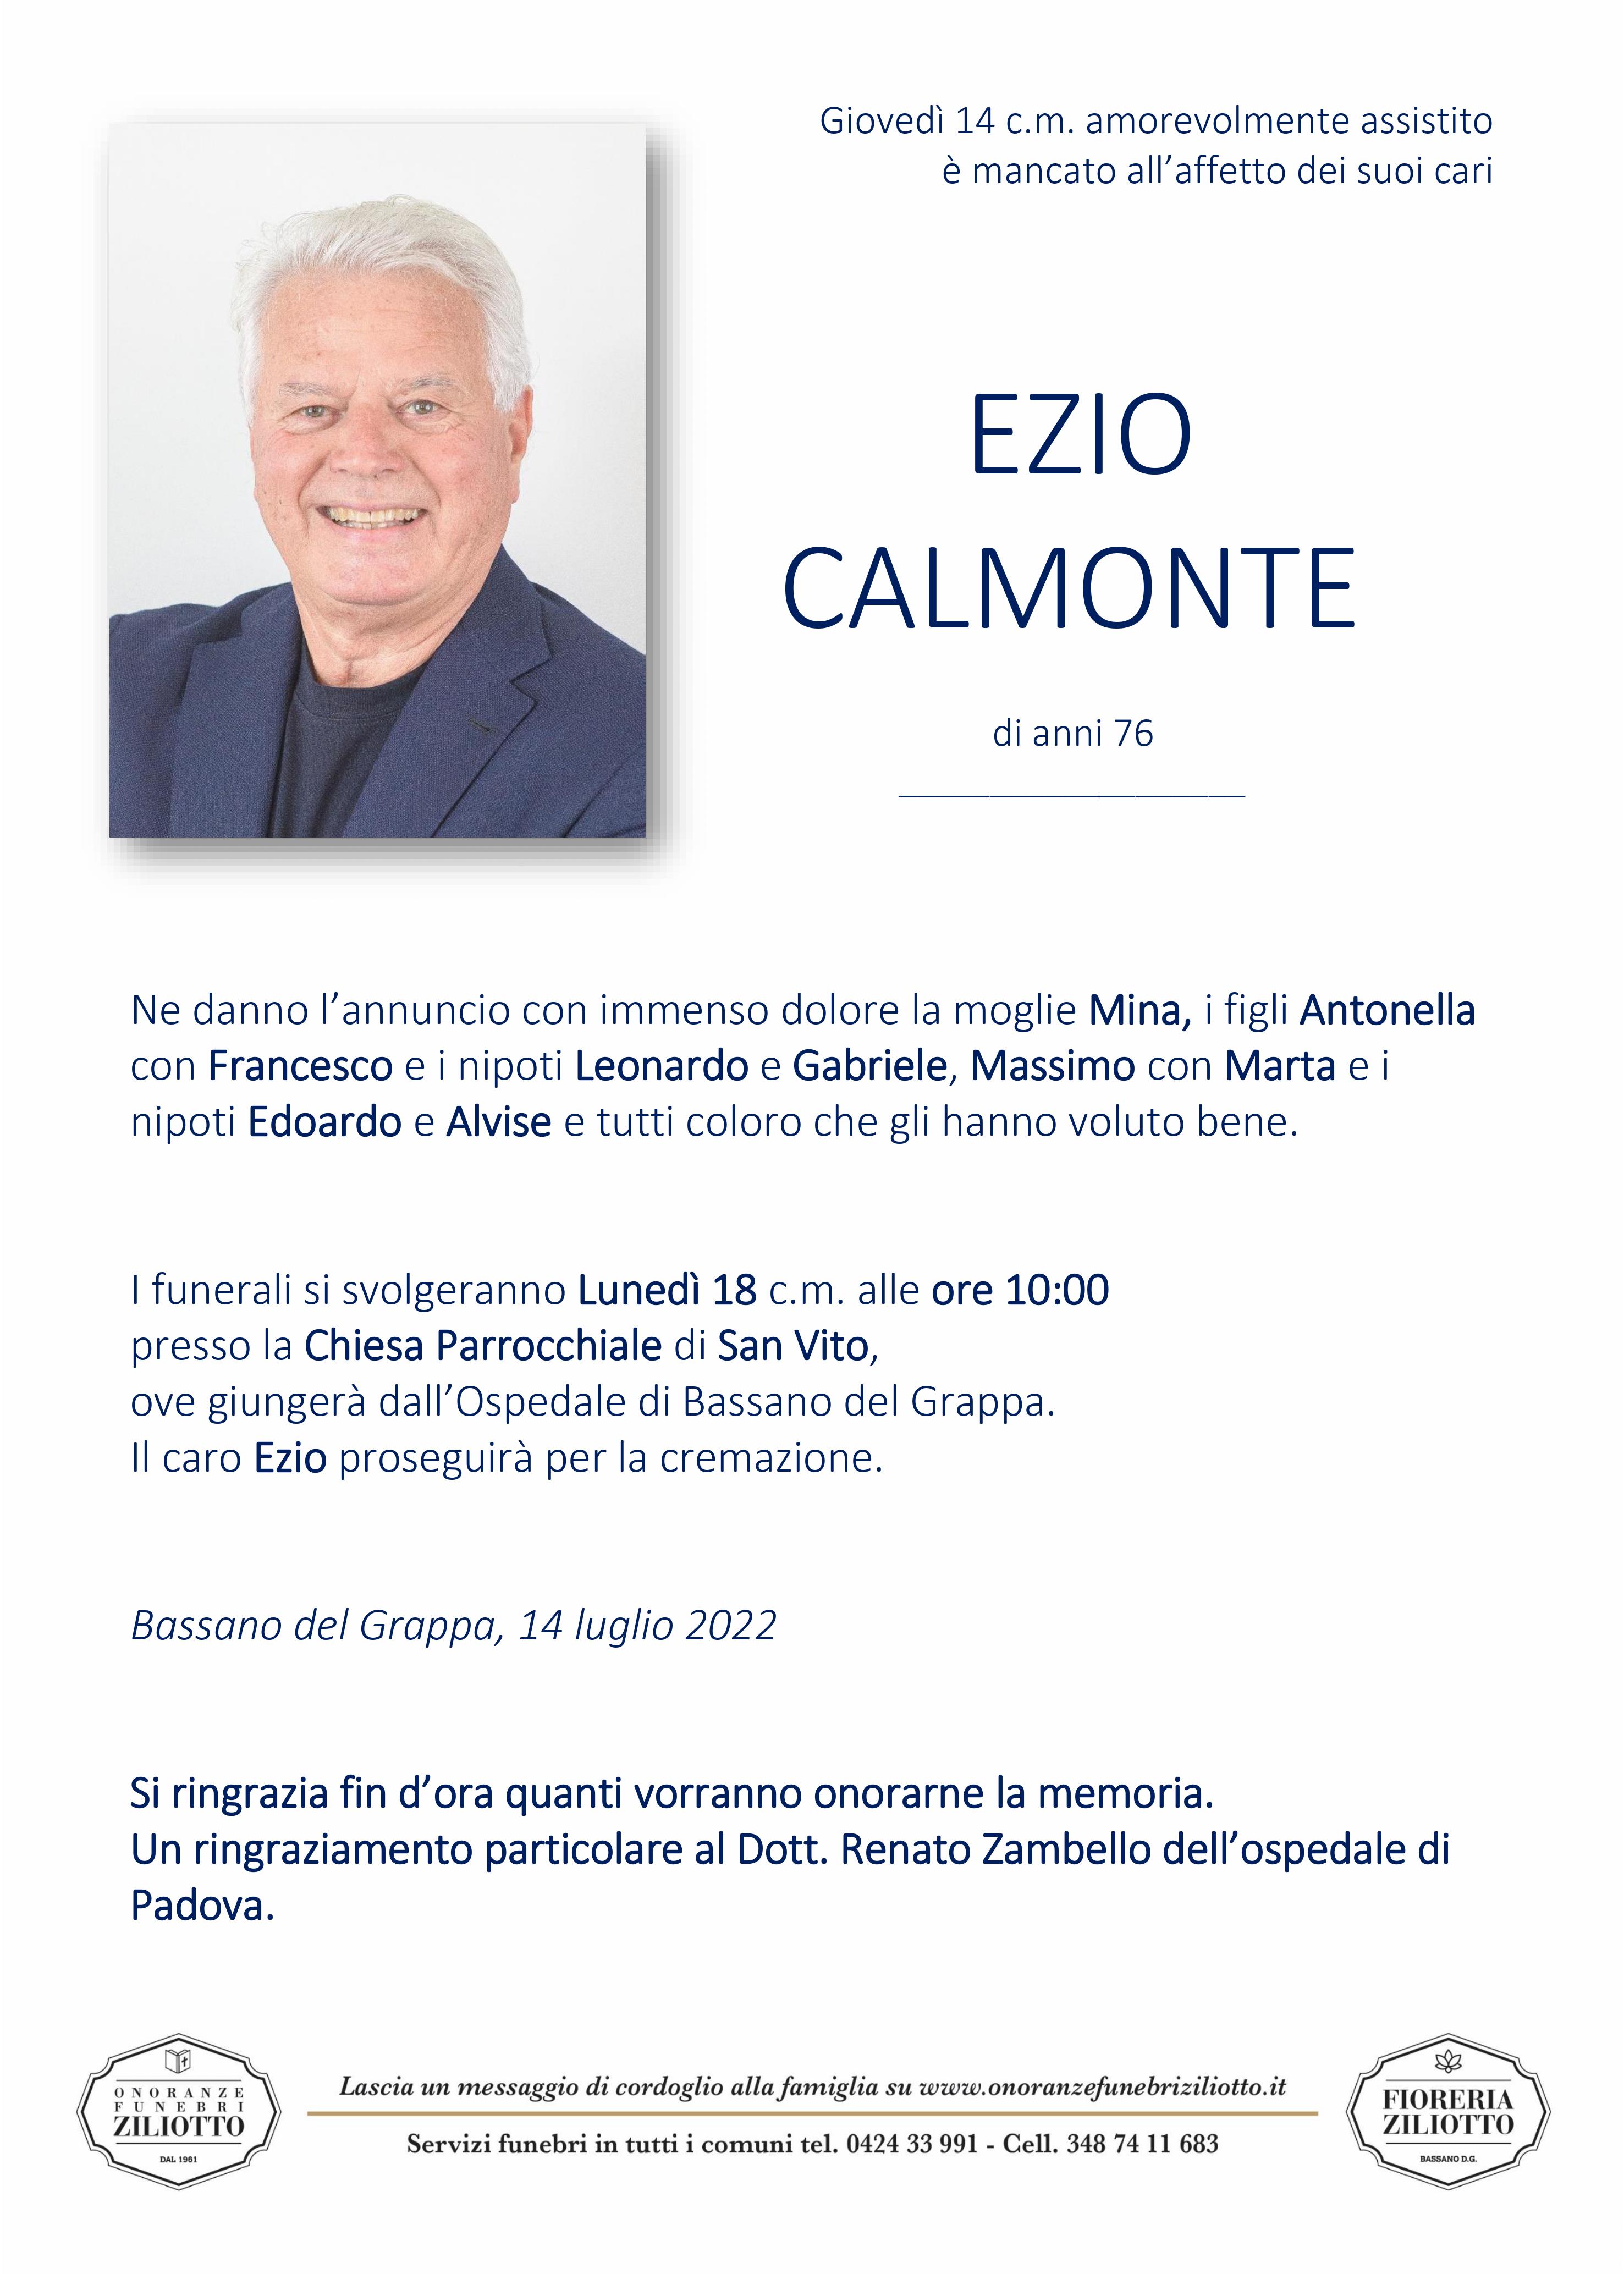 Ezio Calmonte - 76 anni - Bassano del Grappa